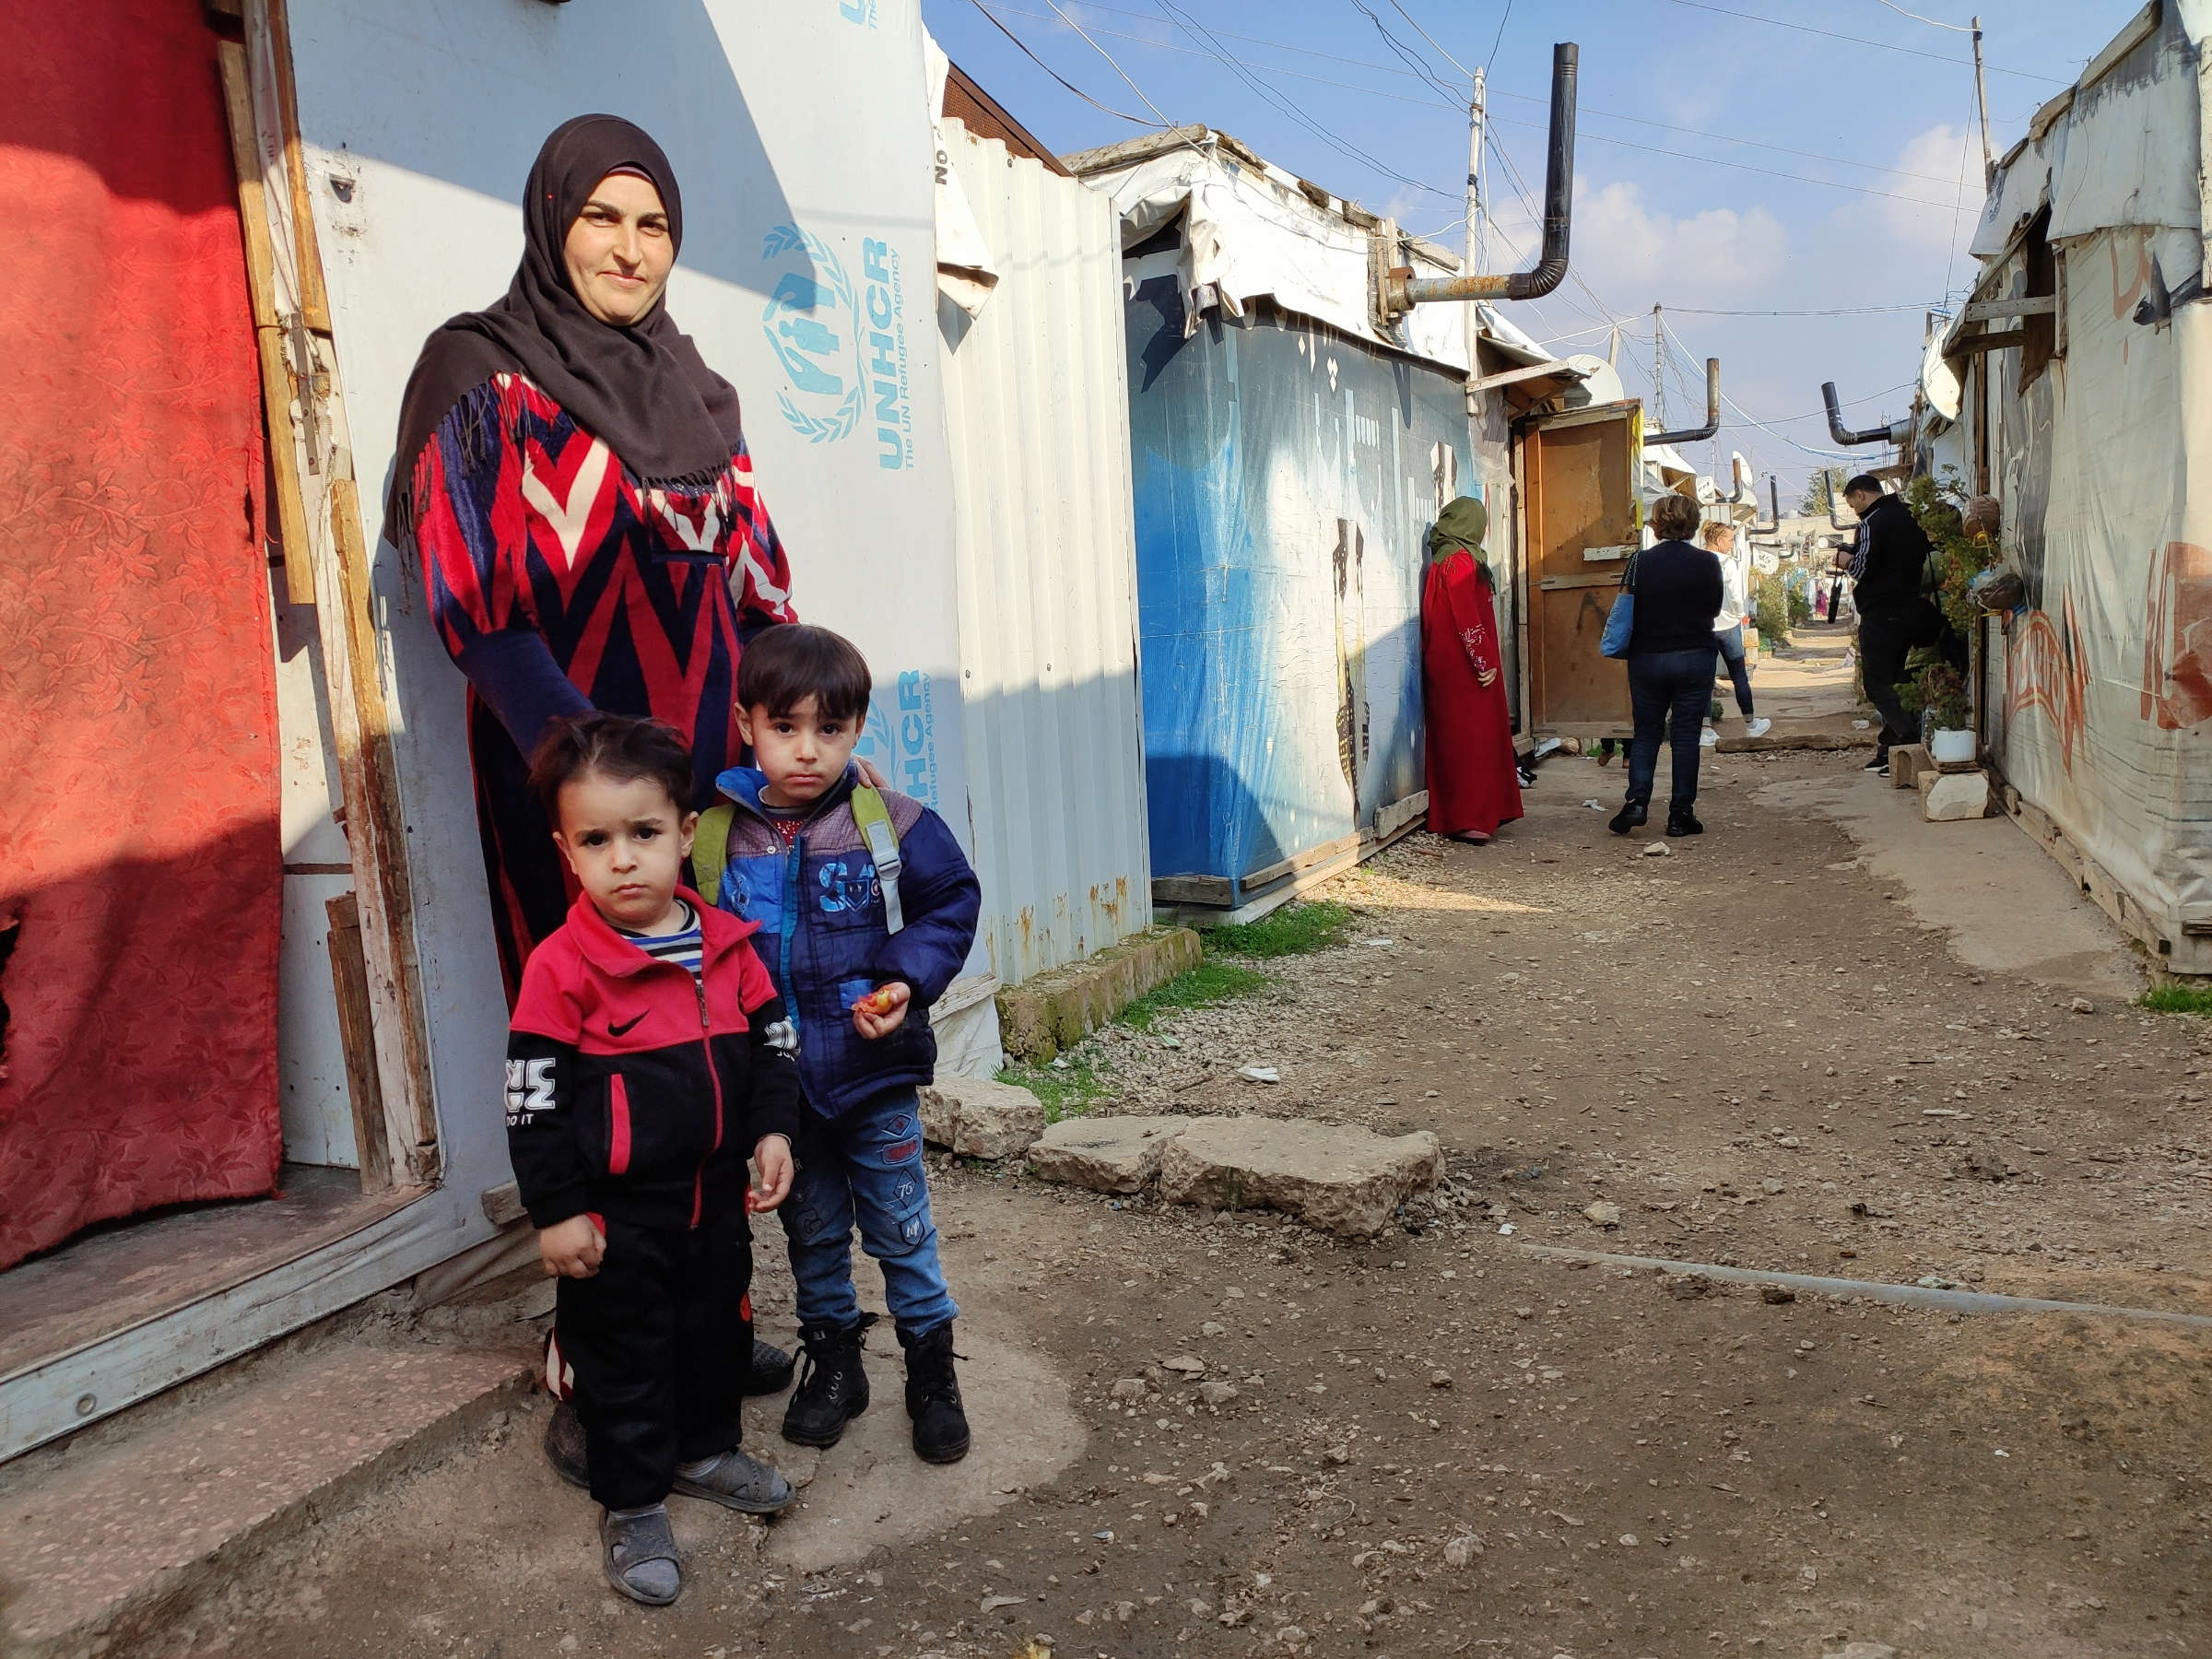 Zwei Kinder vor einer Frau, die vor Behausungen aus Wellblech steht, im Hintergrund eine weitere Menschengruppe